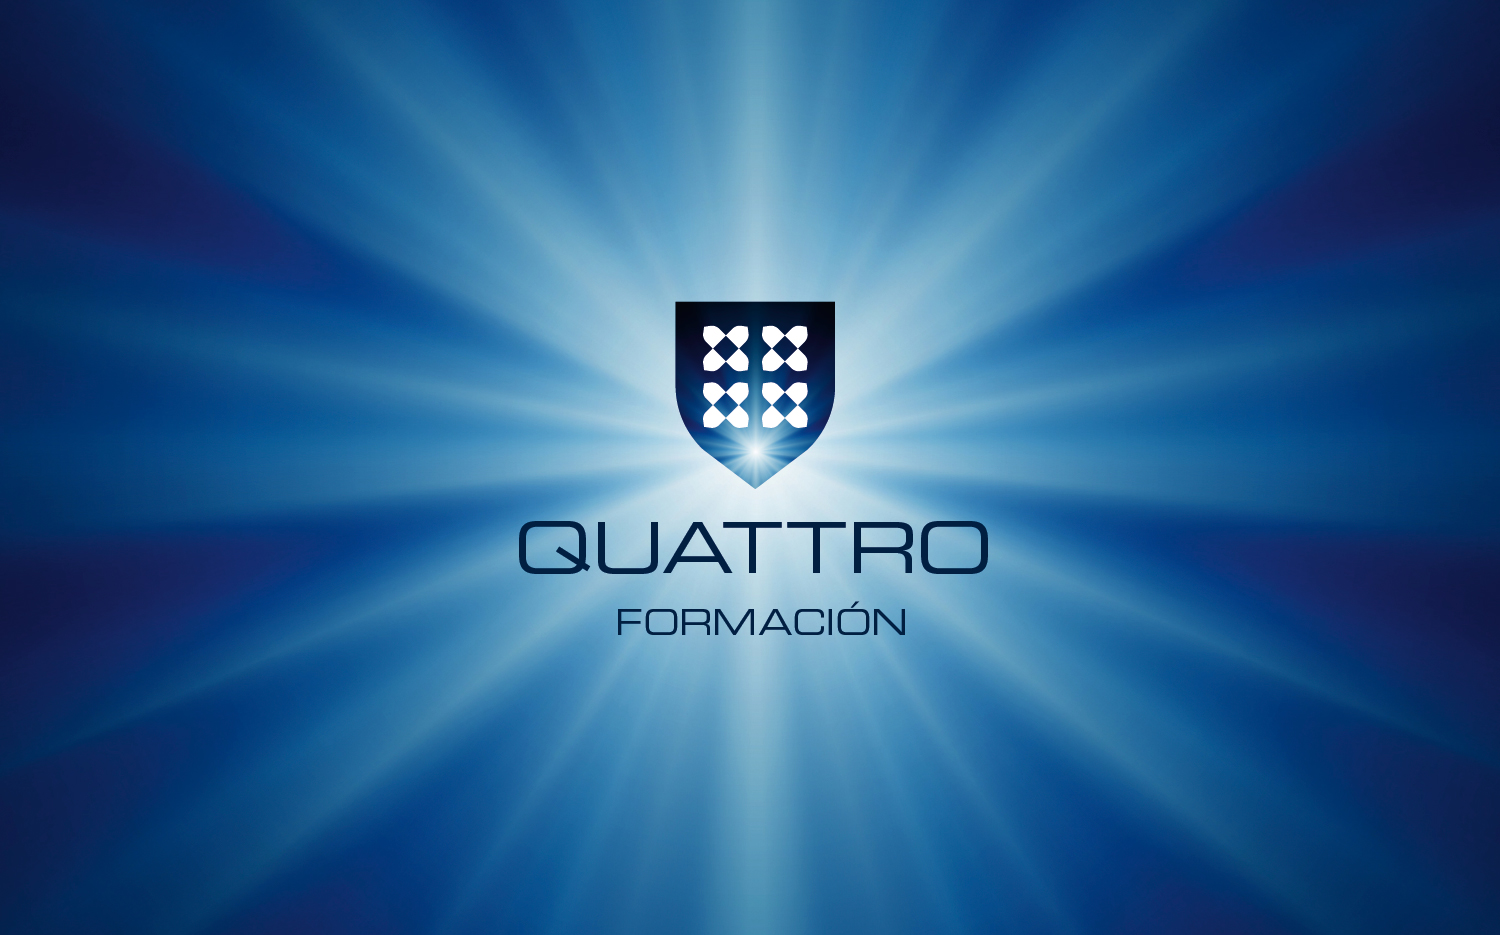 Diseño de identidad de Quattro Formacion